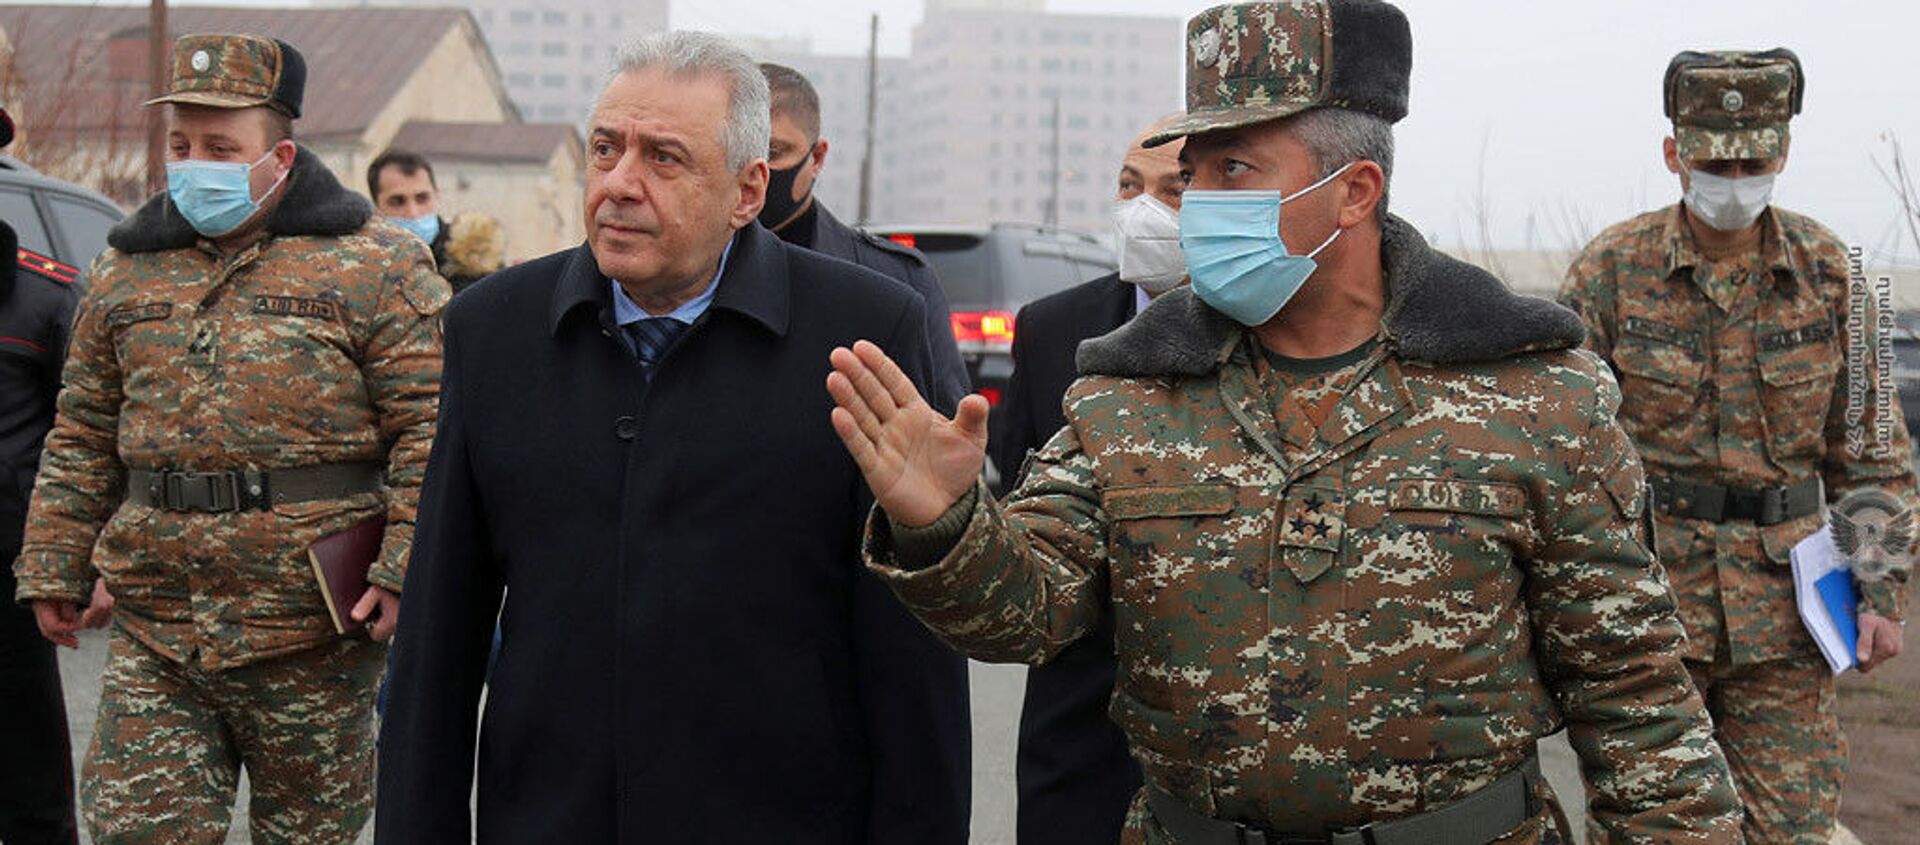 Министр обороны РА Вагаршак Арутюнян посетил одну из воинских частей (10 декабря 2020). - Sputnik Армения, 1920, 10.12.2020